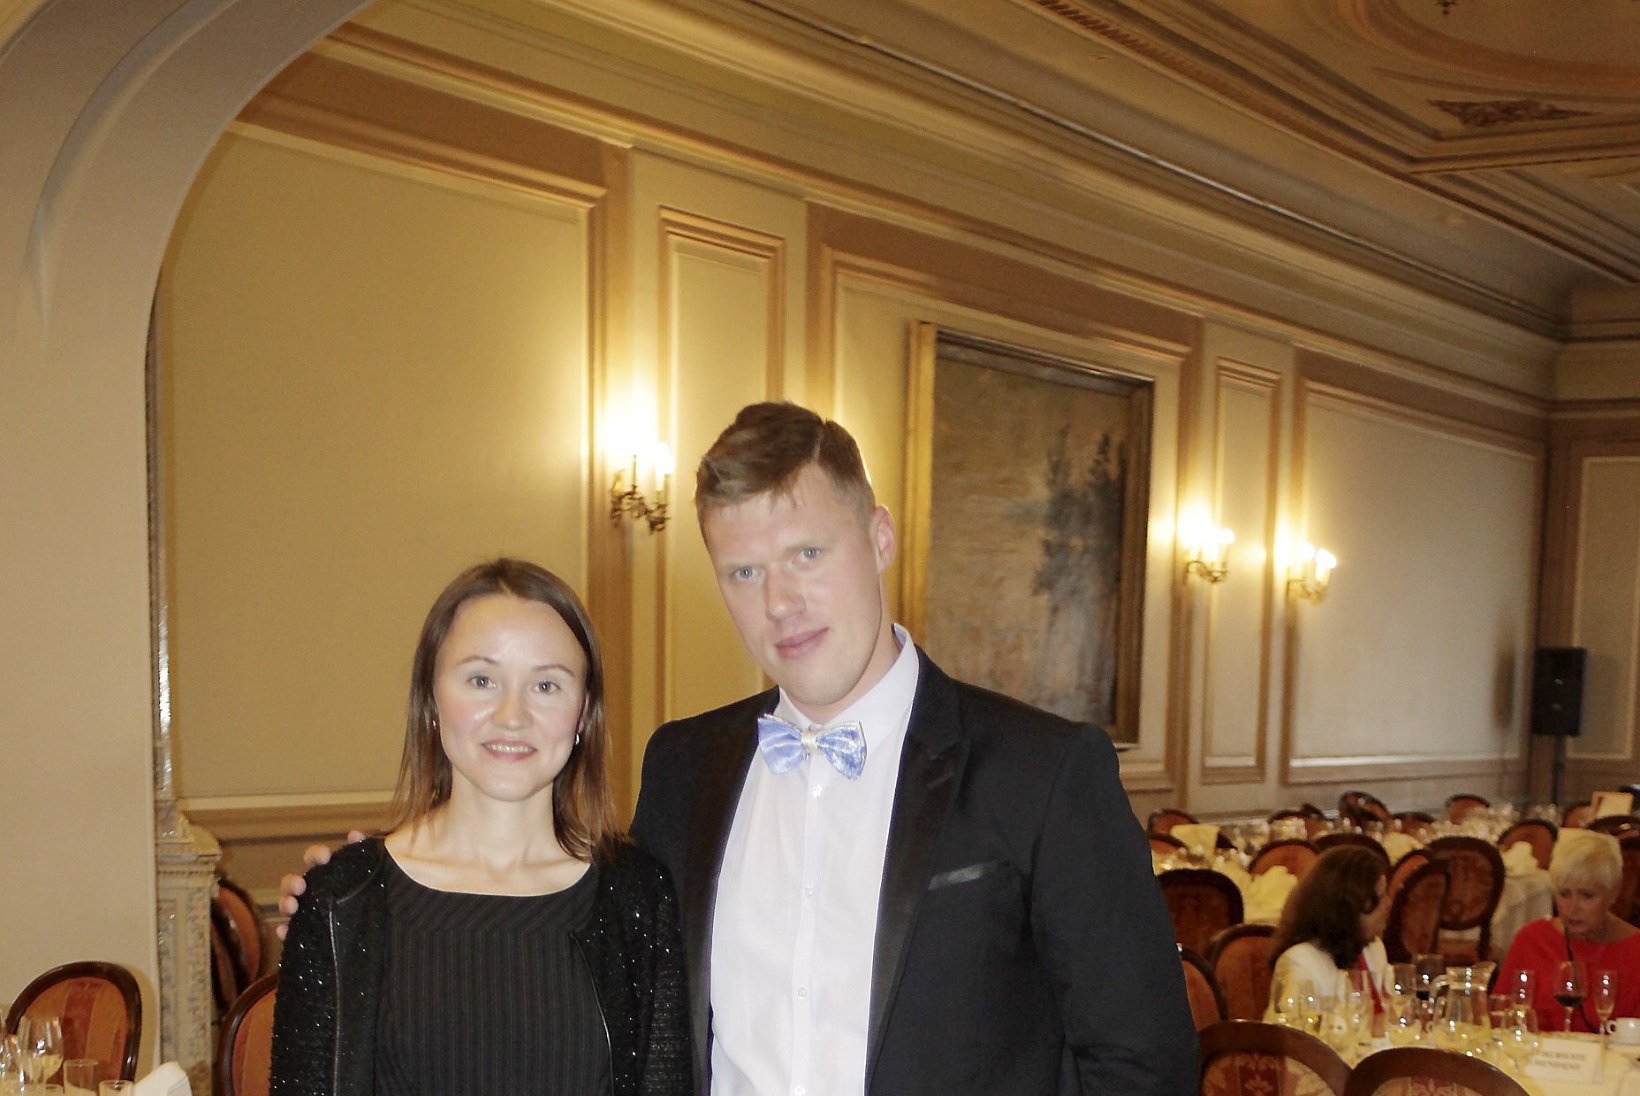 PILDID JA VIDEO | Tallinna Õpetajate Maja tähistas 60. sünnipäeva, õnnitlema tuli ka Ivan Orav